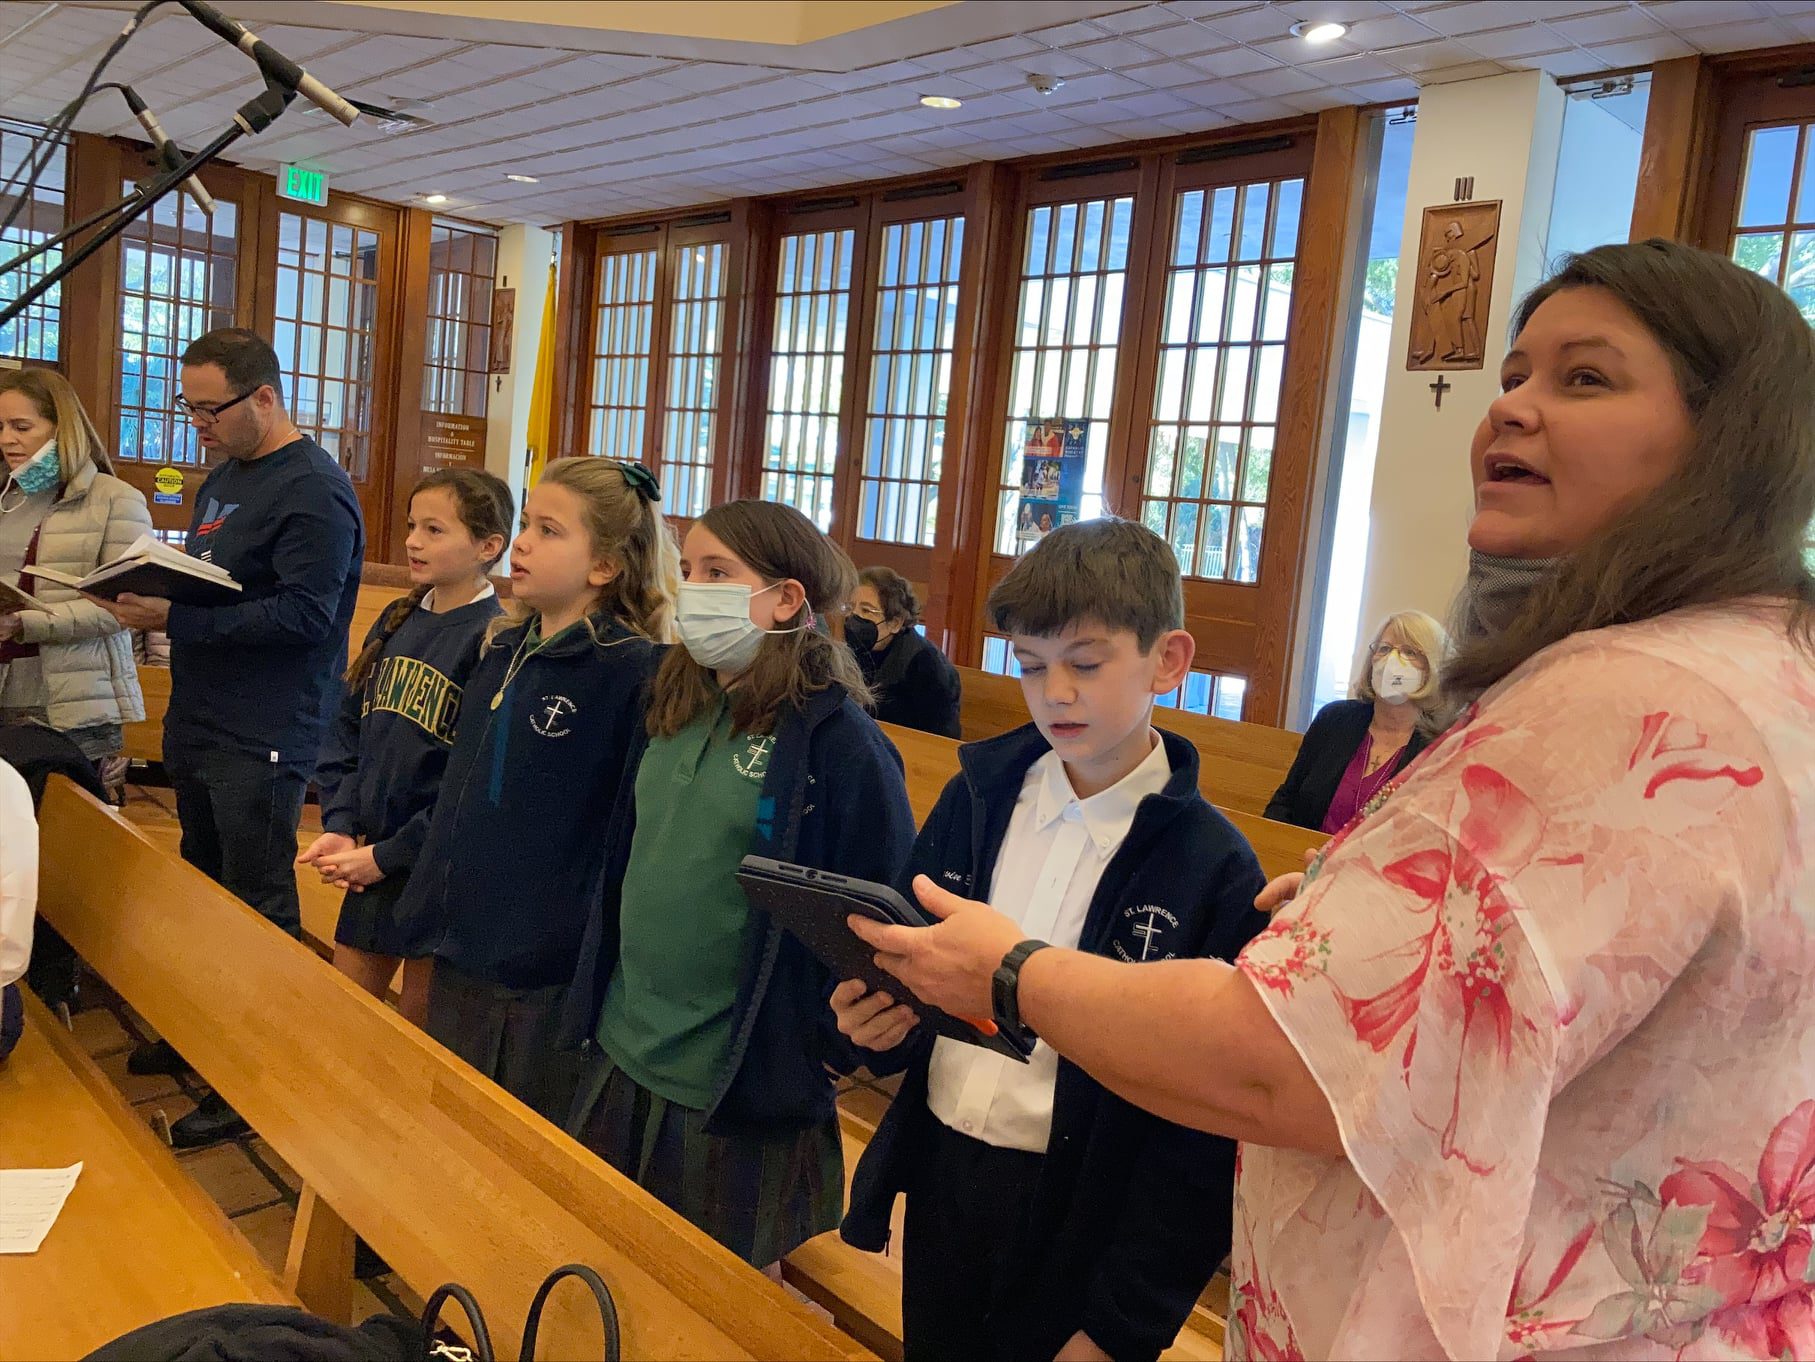 Children’s Choir starting up for Easter 2022